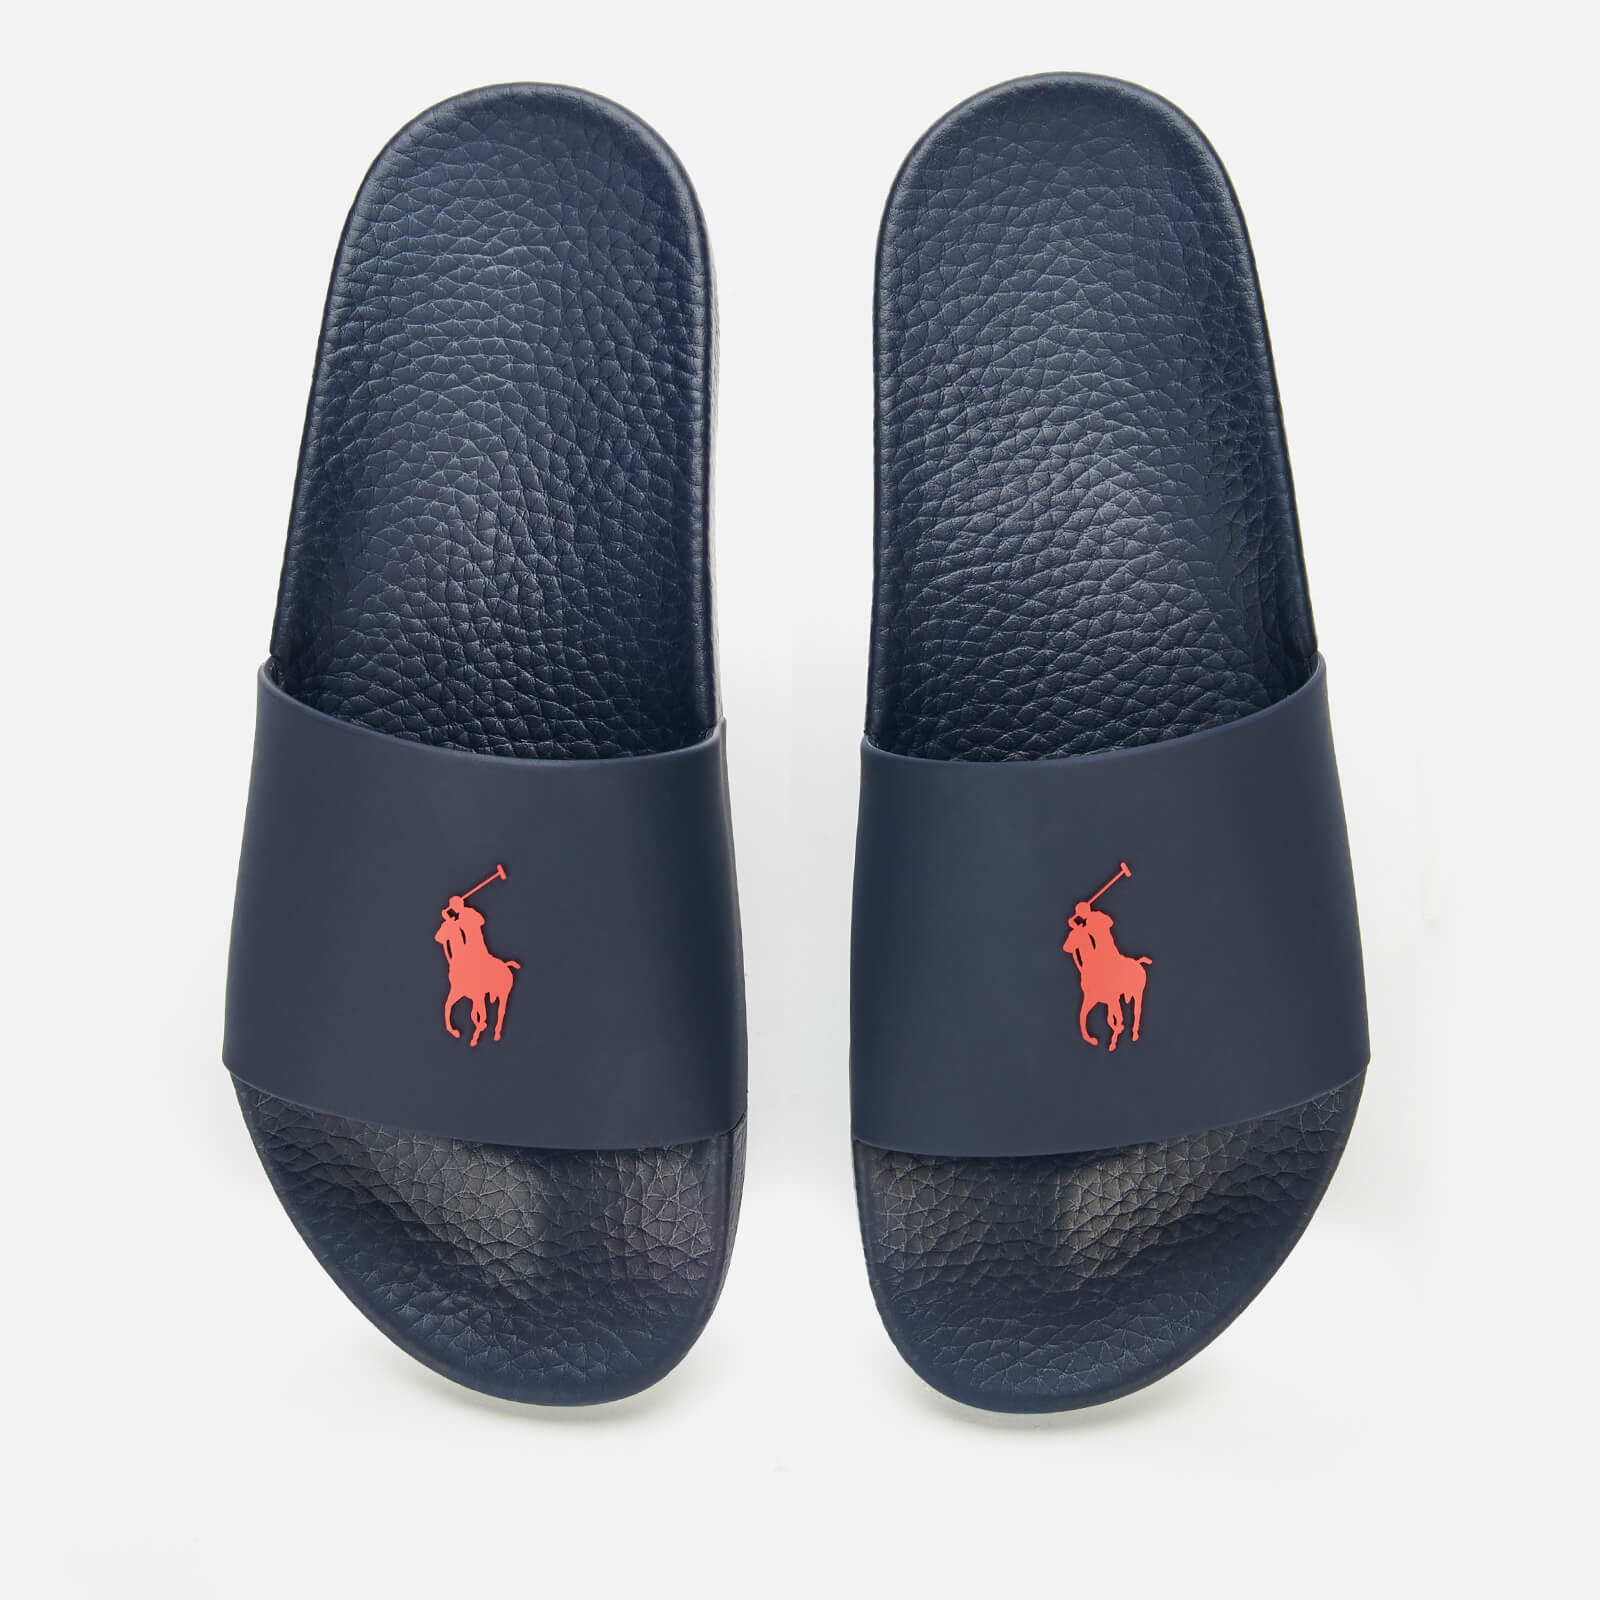 Polo Ralph Lauren Men’s Slide Sandals - Navy/Red PP